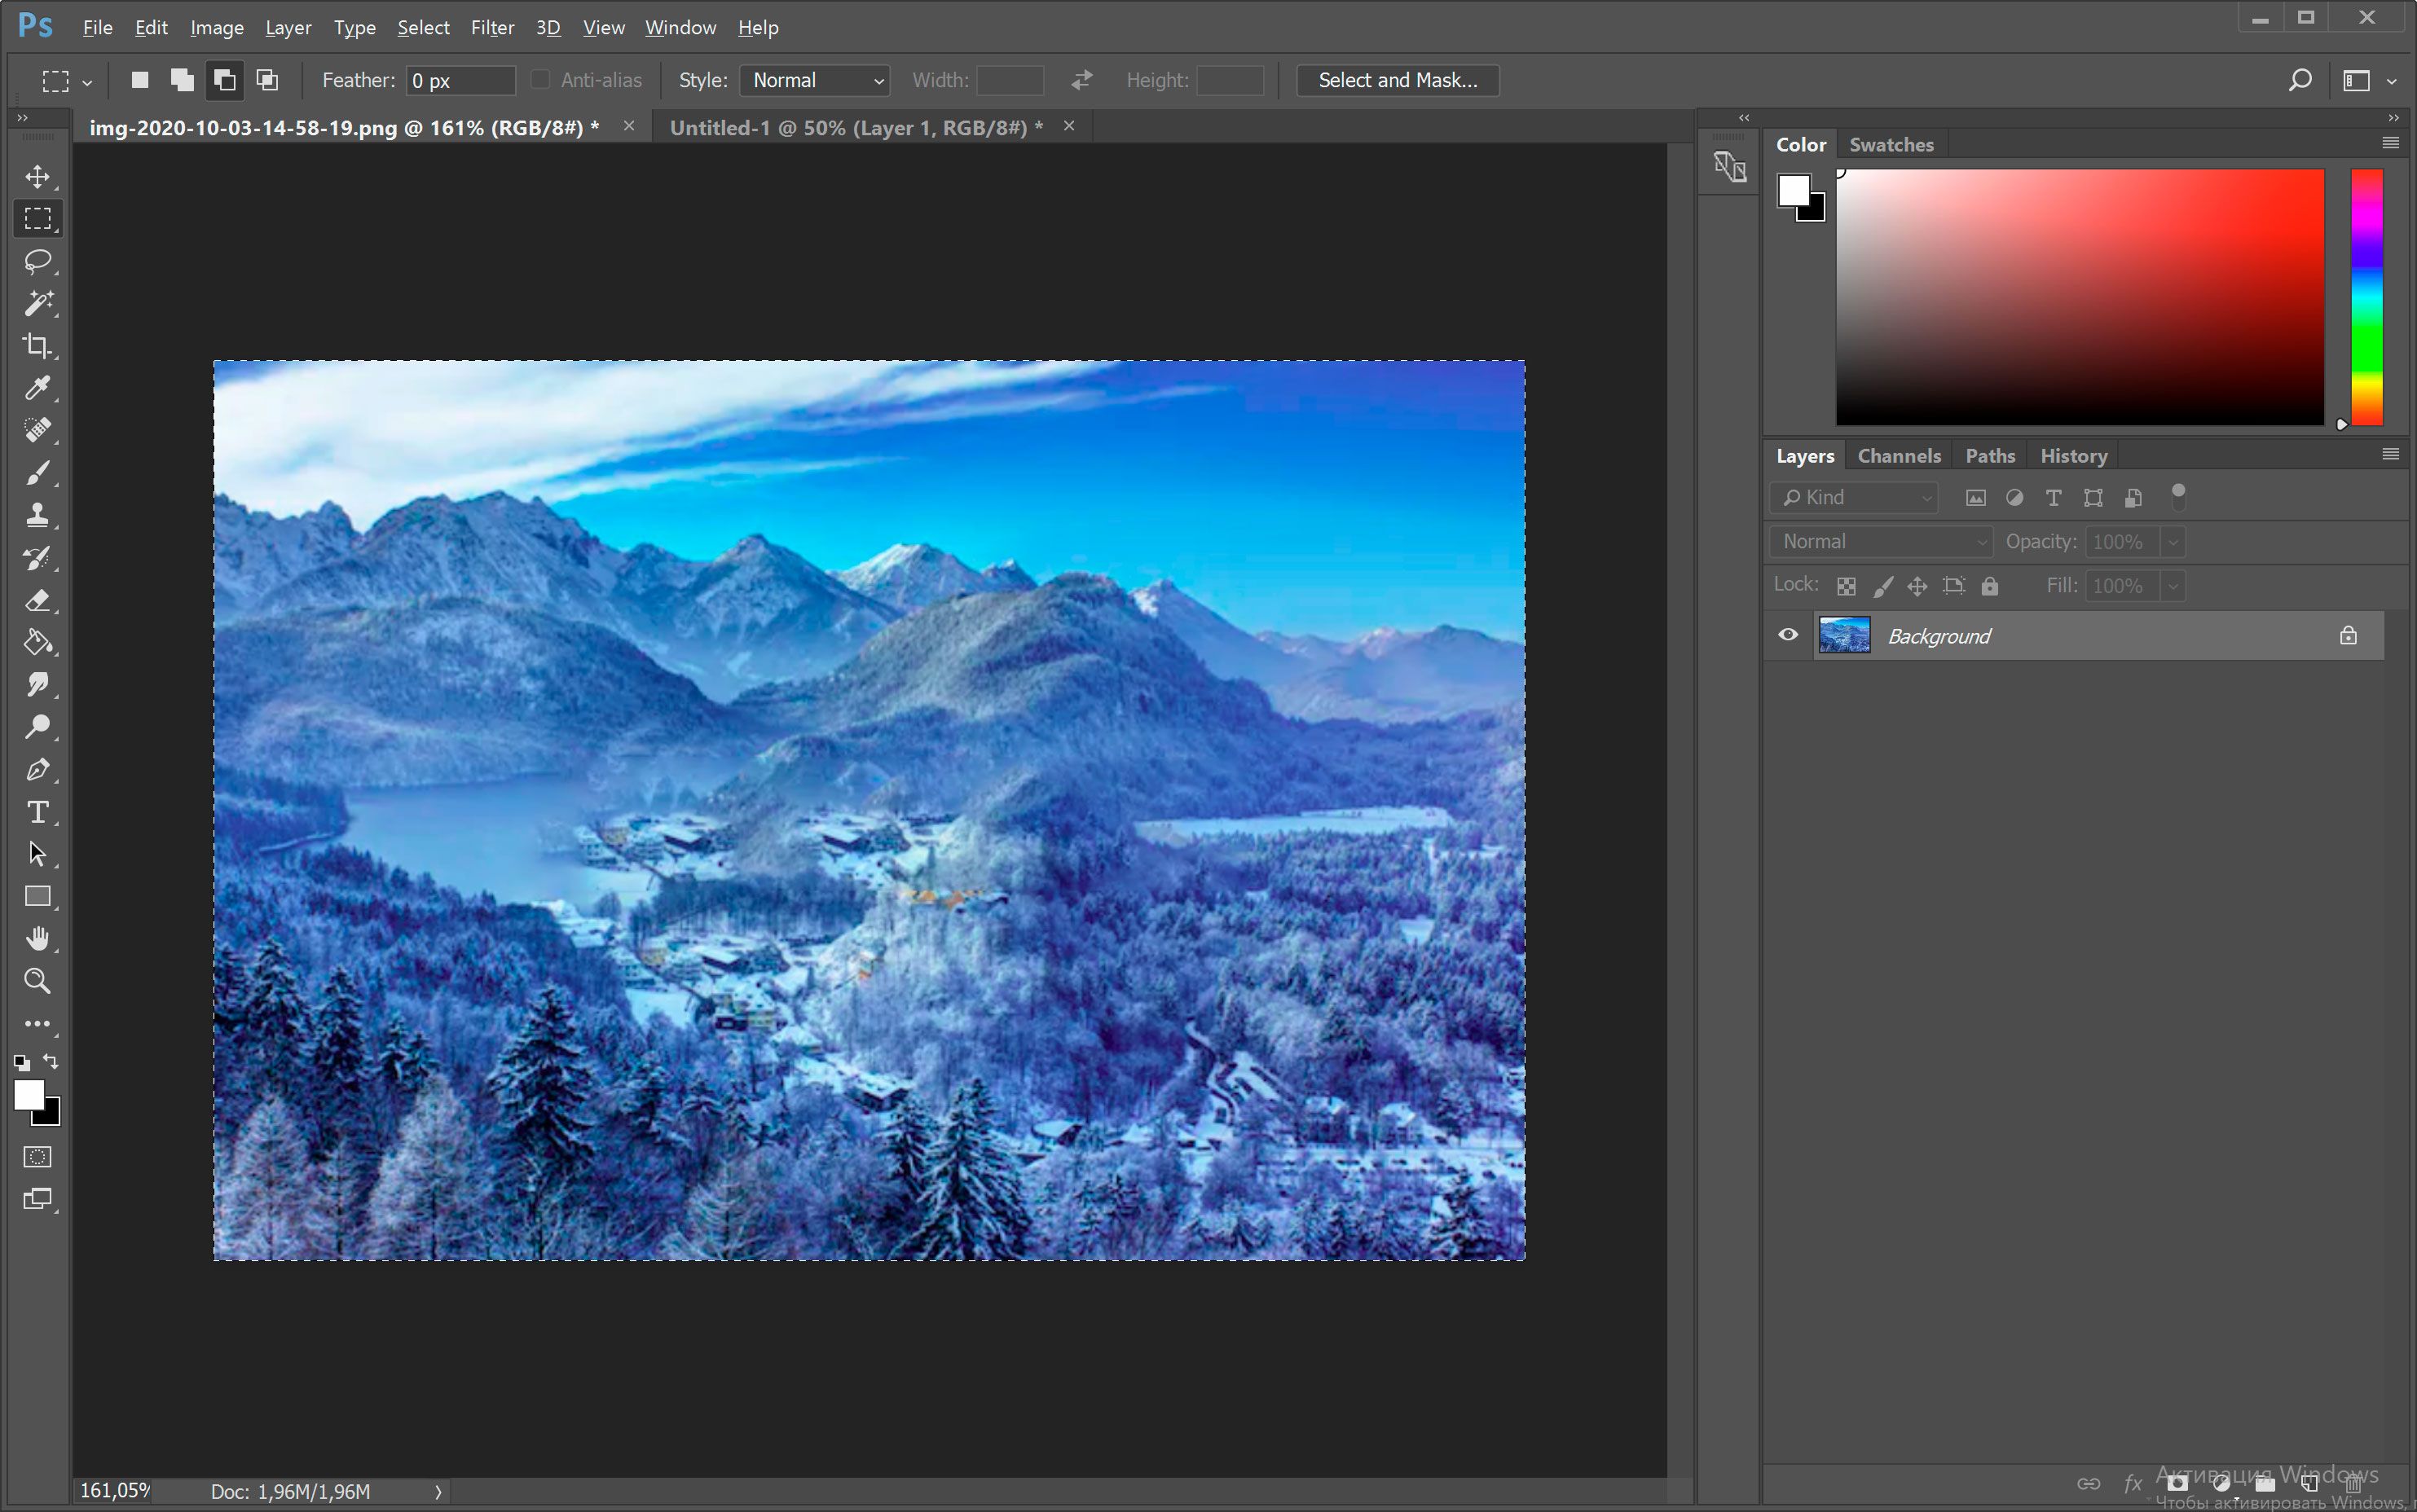 Rimuovi il watermark di Shutterstock in Photoshop..